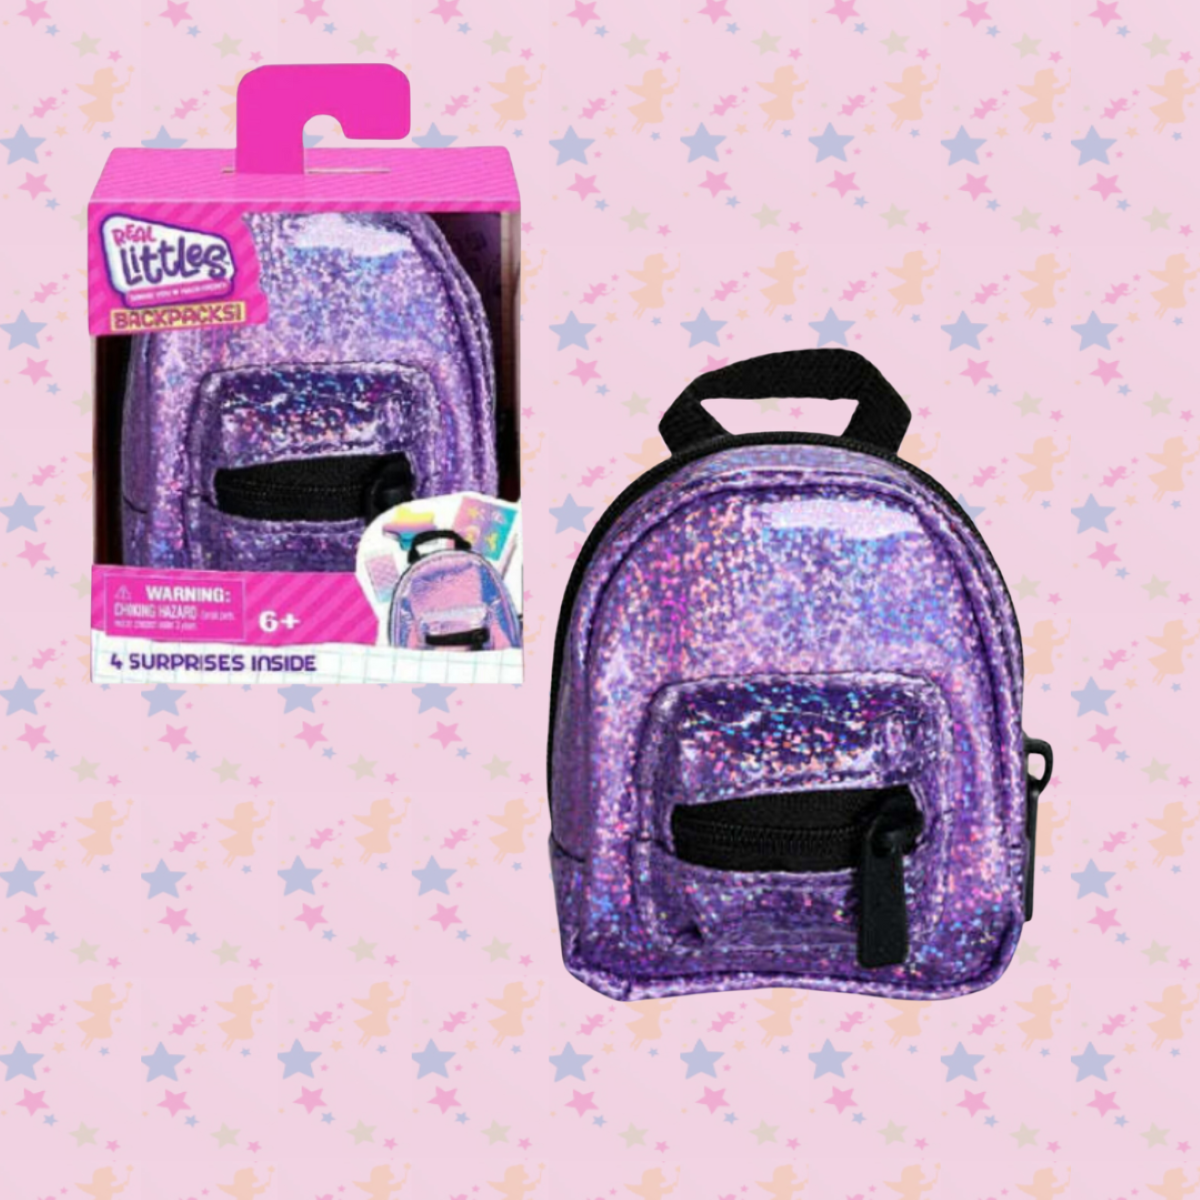 Сюжетно-ролевые игрушки Миниатюрный рюкзачок Real Littles фиолетовый с 4 сюрпризами